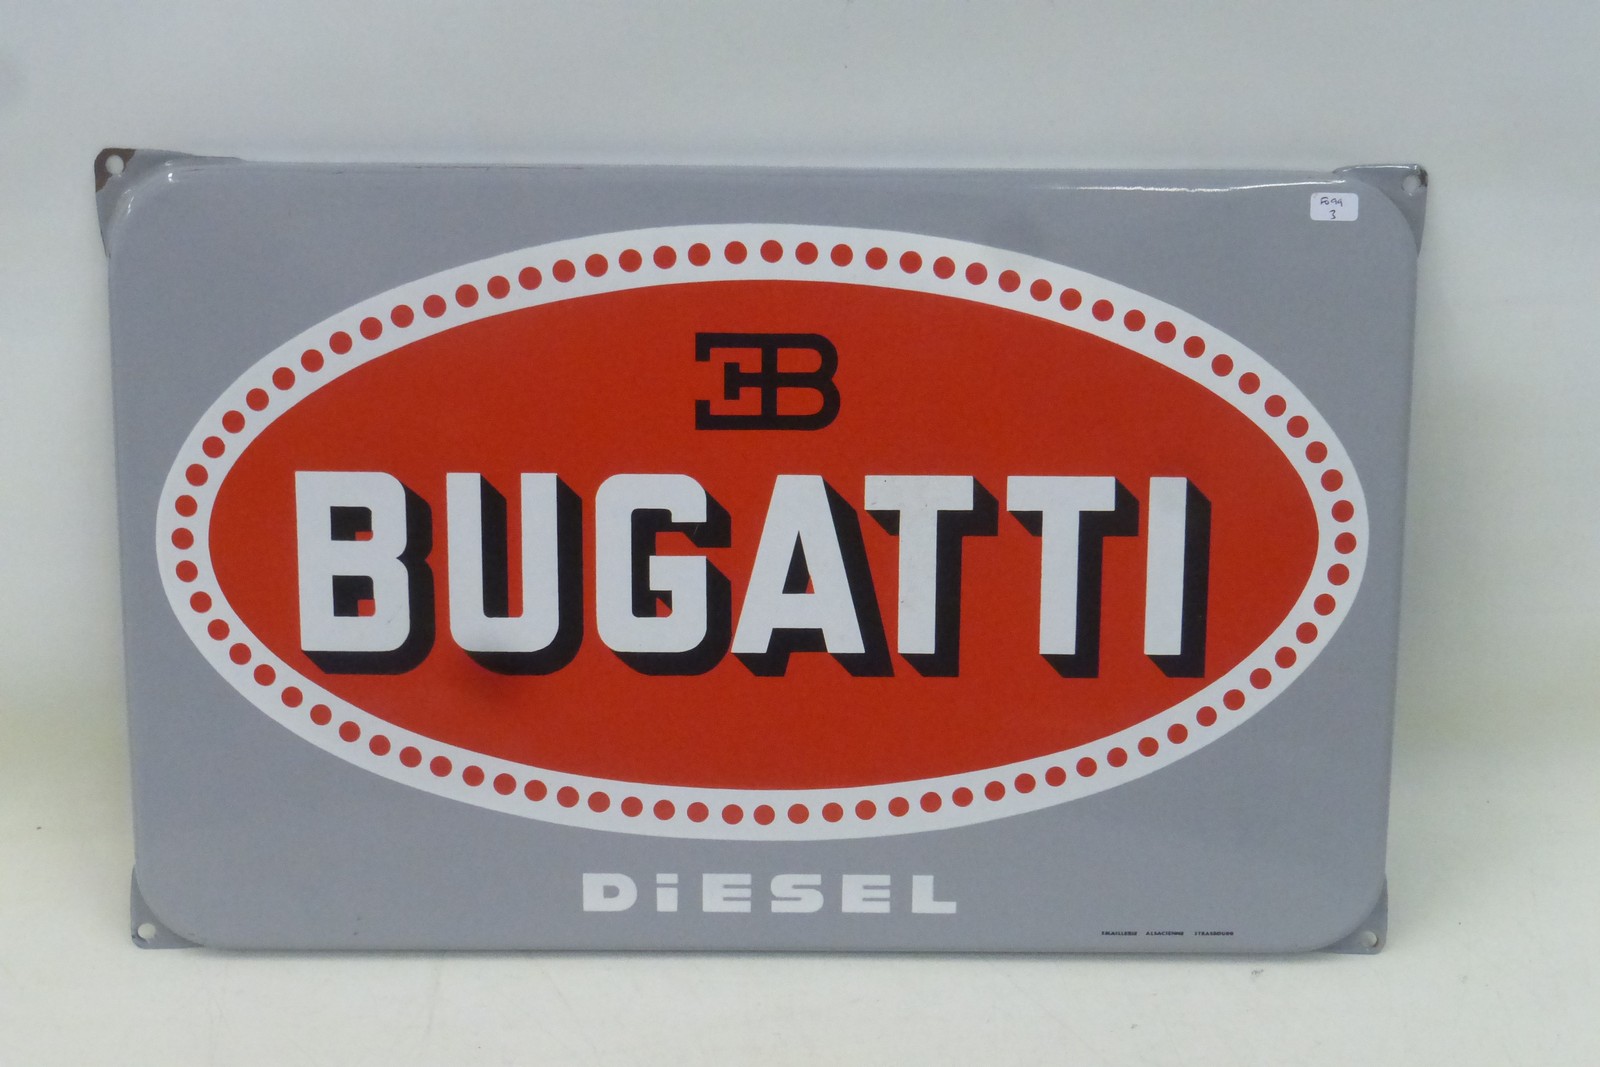 A reproduction Bugatti Diesel enamel sign, 19 x 11 3/4".